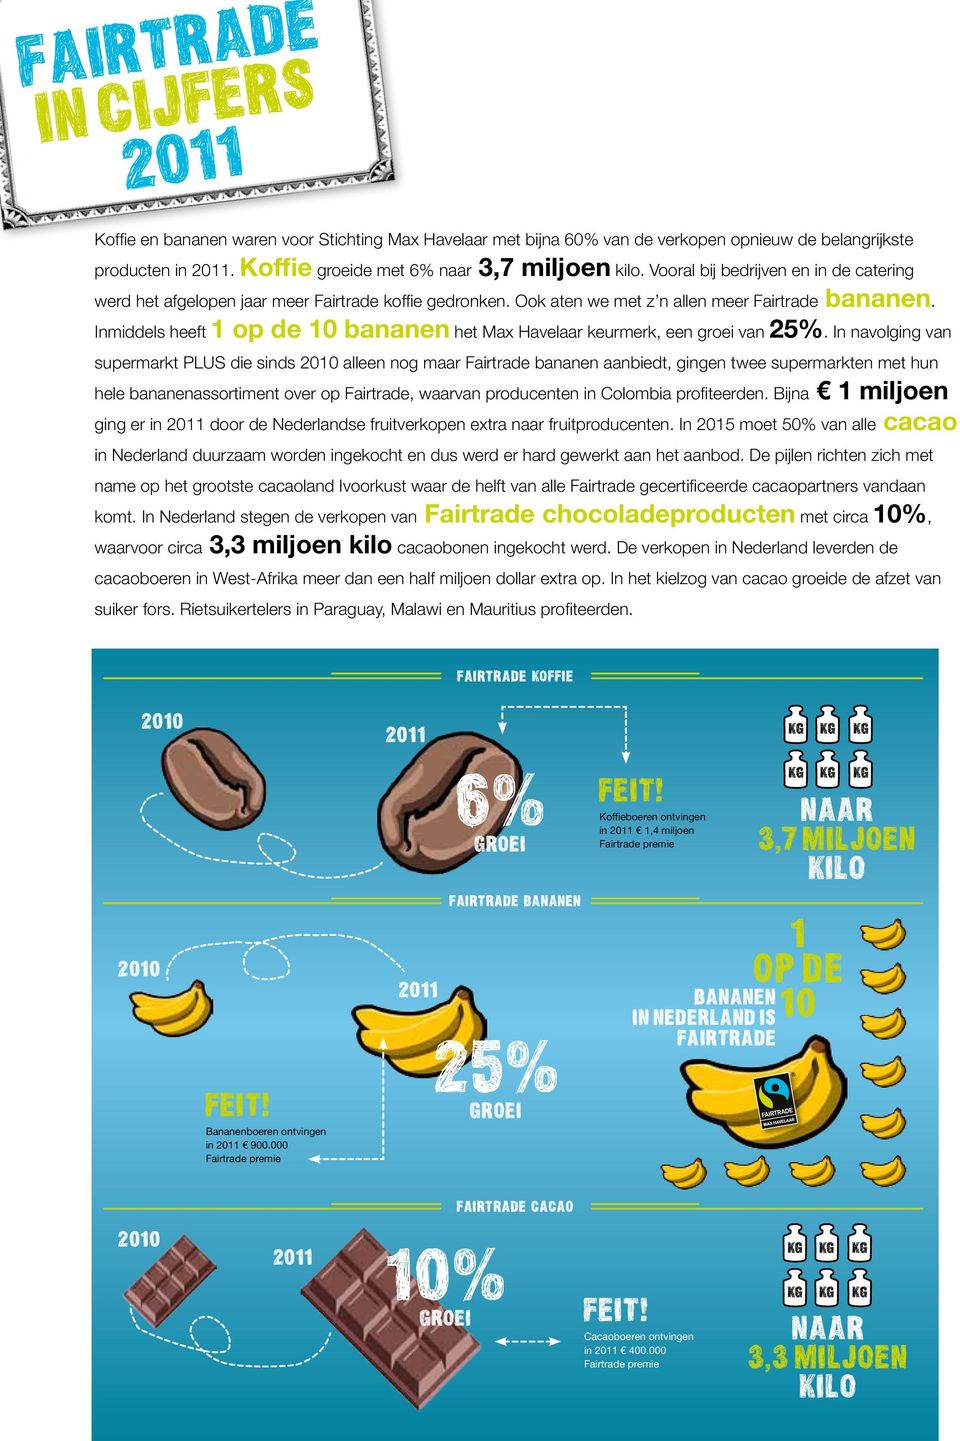 Inmiddels heeft 1 op de 10 bananen het Max Havelaar keurmerk, een groei van 25%.